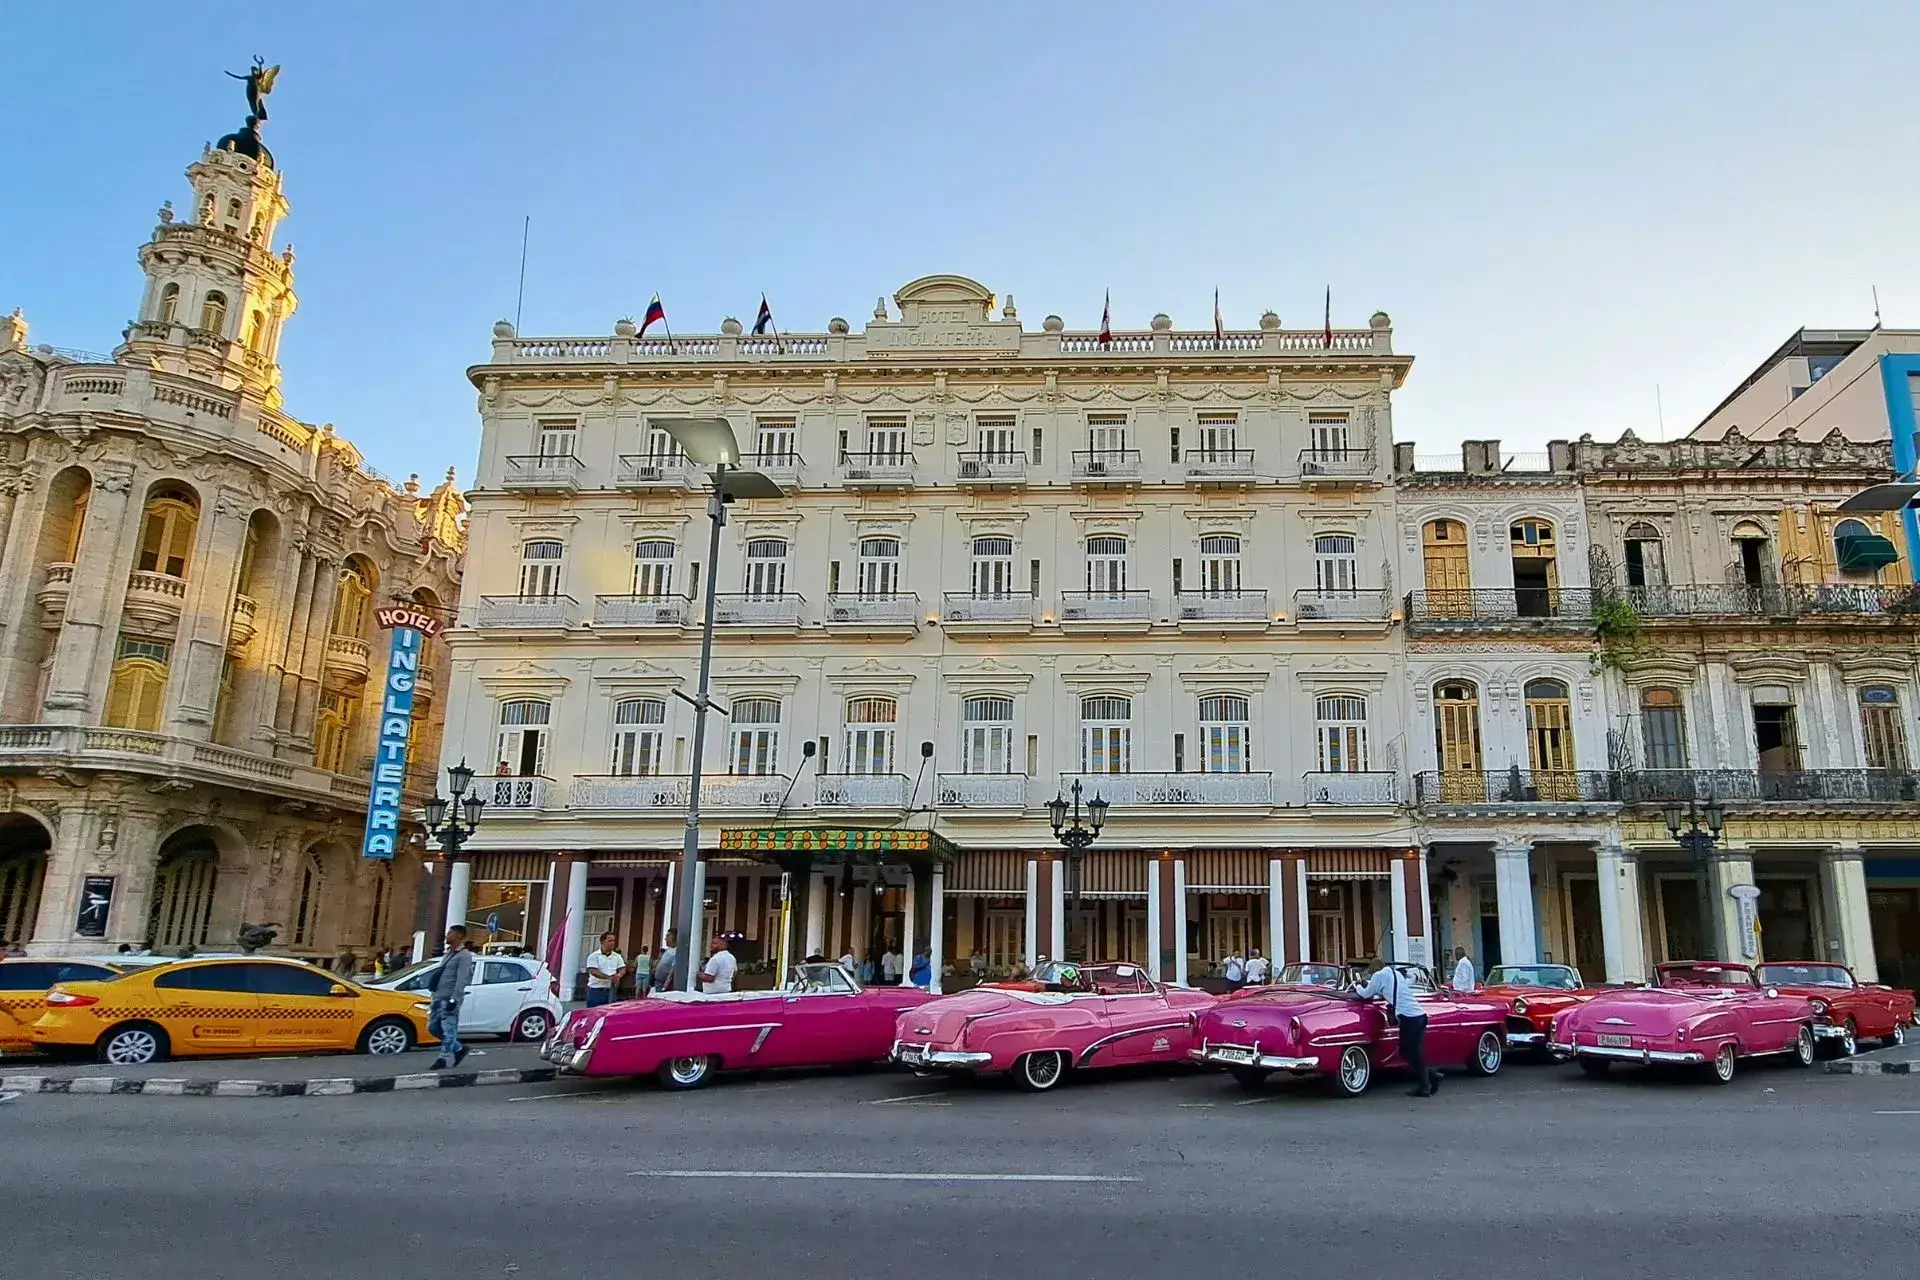 Coches clásicos aparcados delante del hotel Inglaterra, edificio de color marrón claro